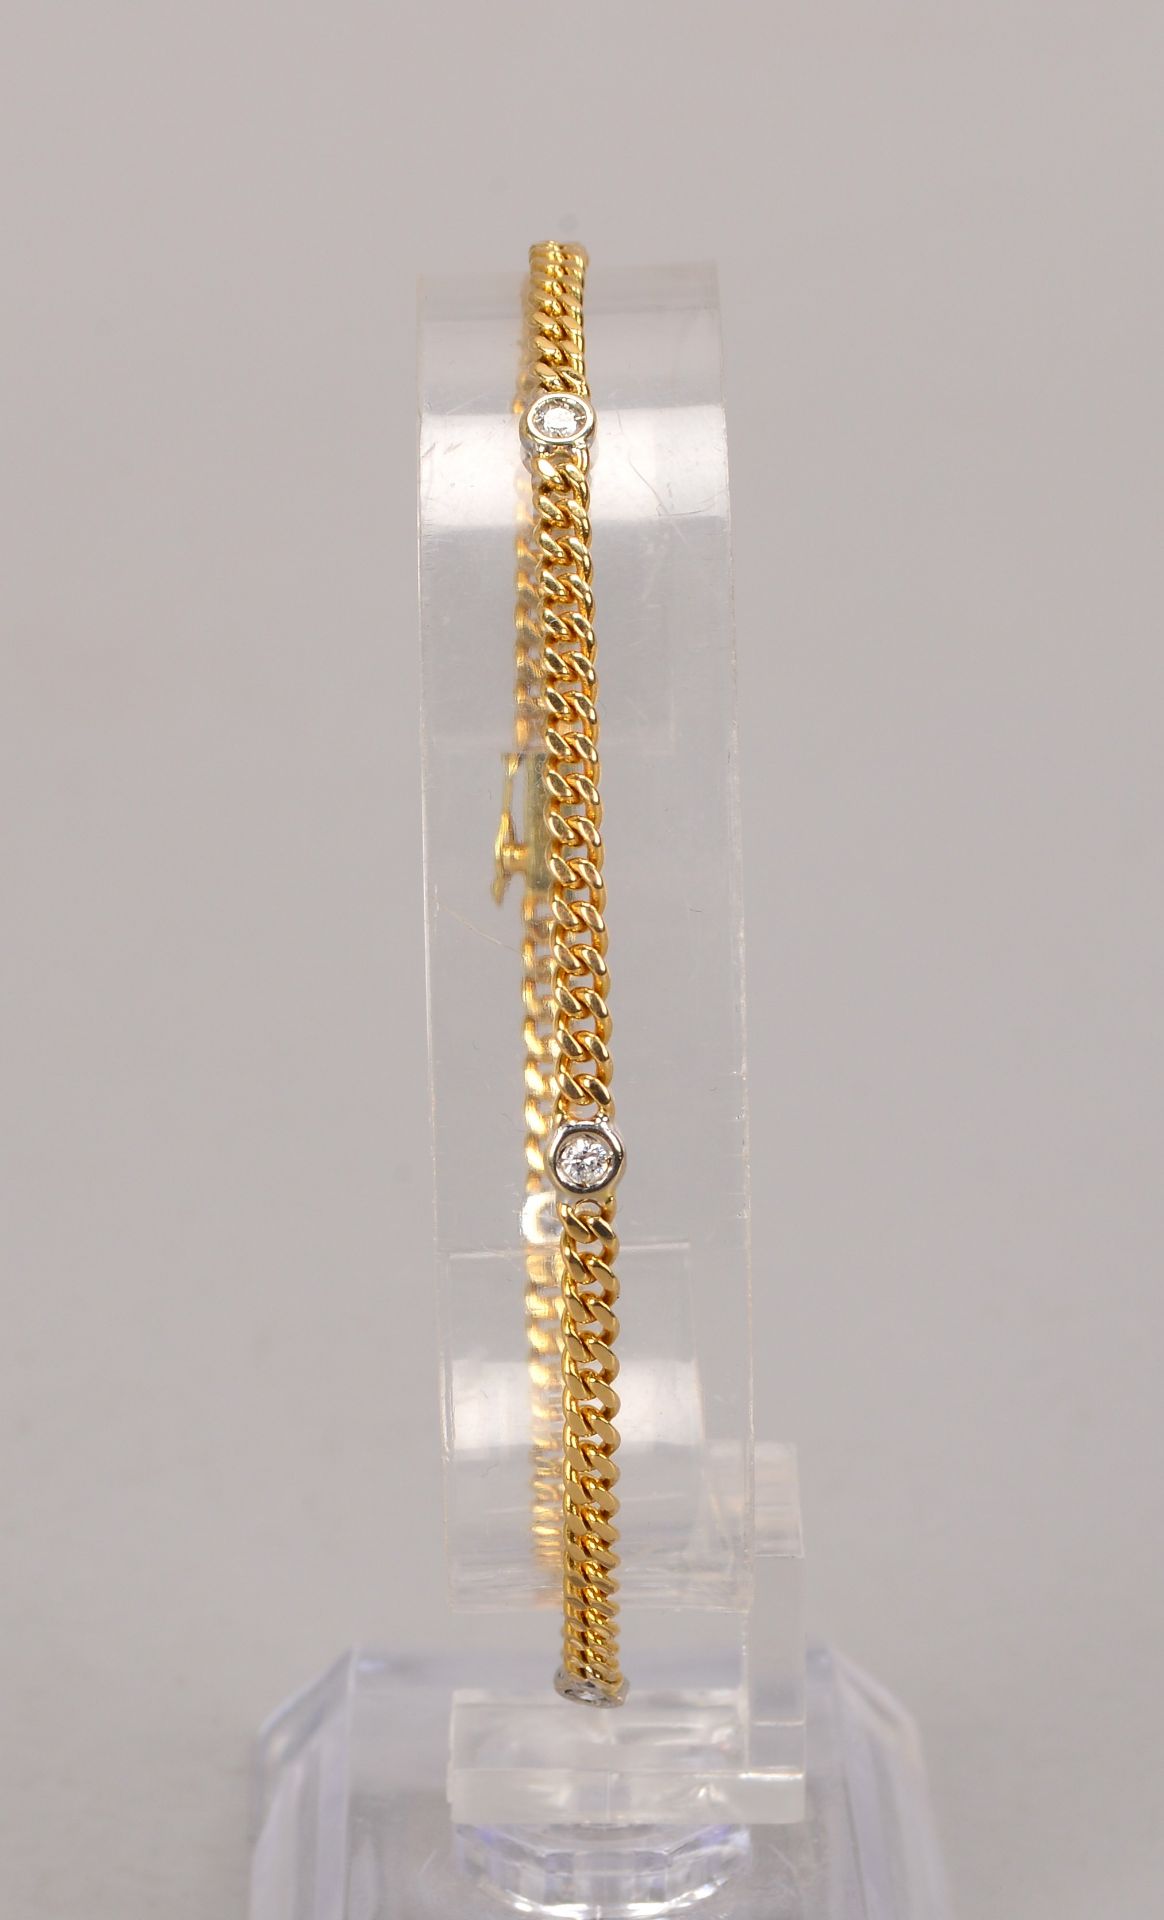 Armband, 585 GG (gez.), besetzt mit 5x kleinen Brillanten, mit Steckschliesse, Laenge 18,5 cm, Gewic - Bild 2 aus 2